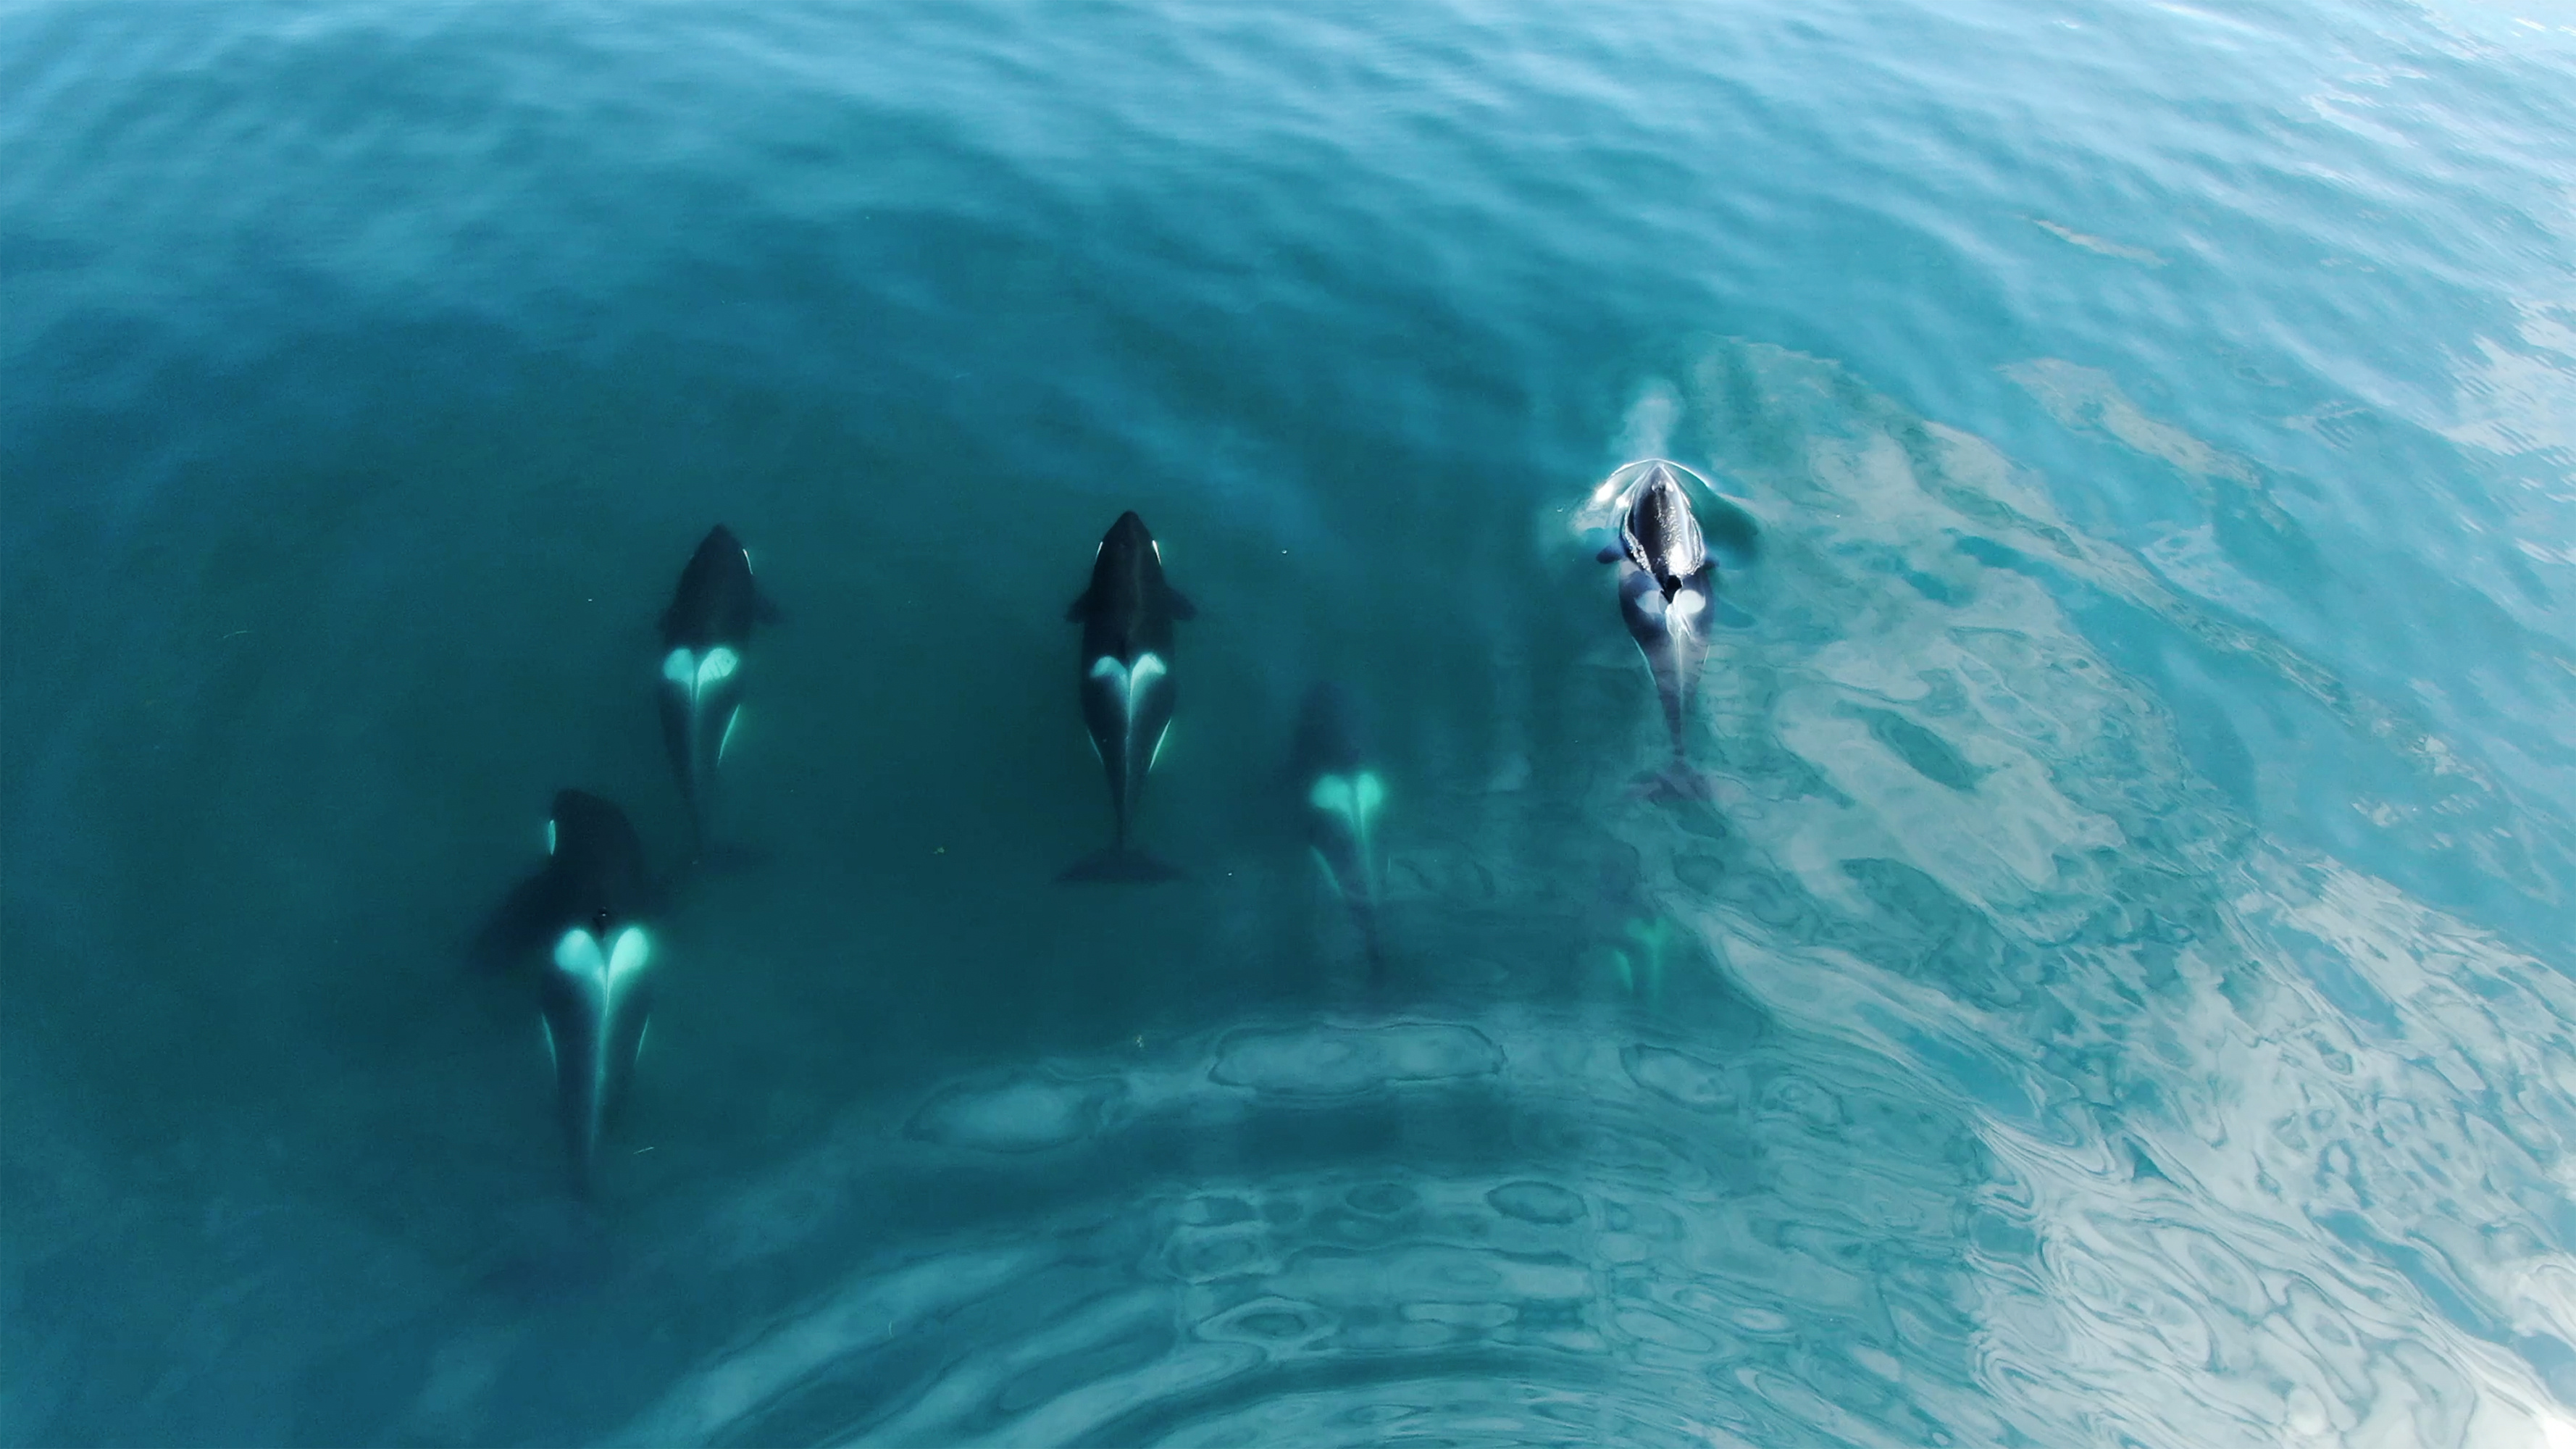 Wild Orcas Whales pod in open water in blue ocean